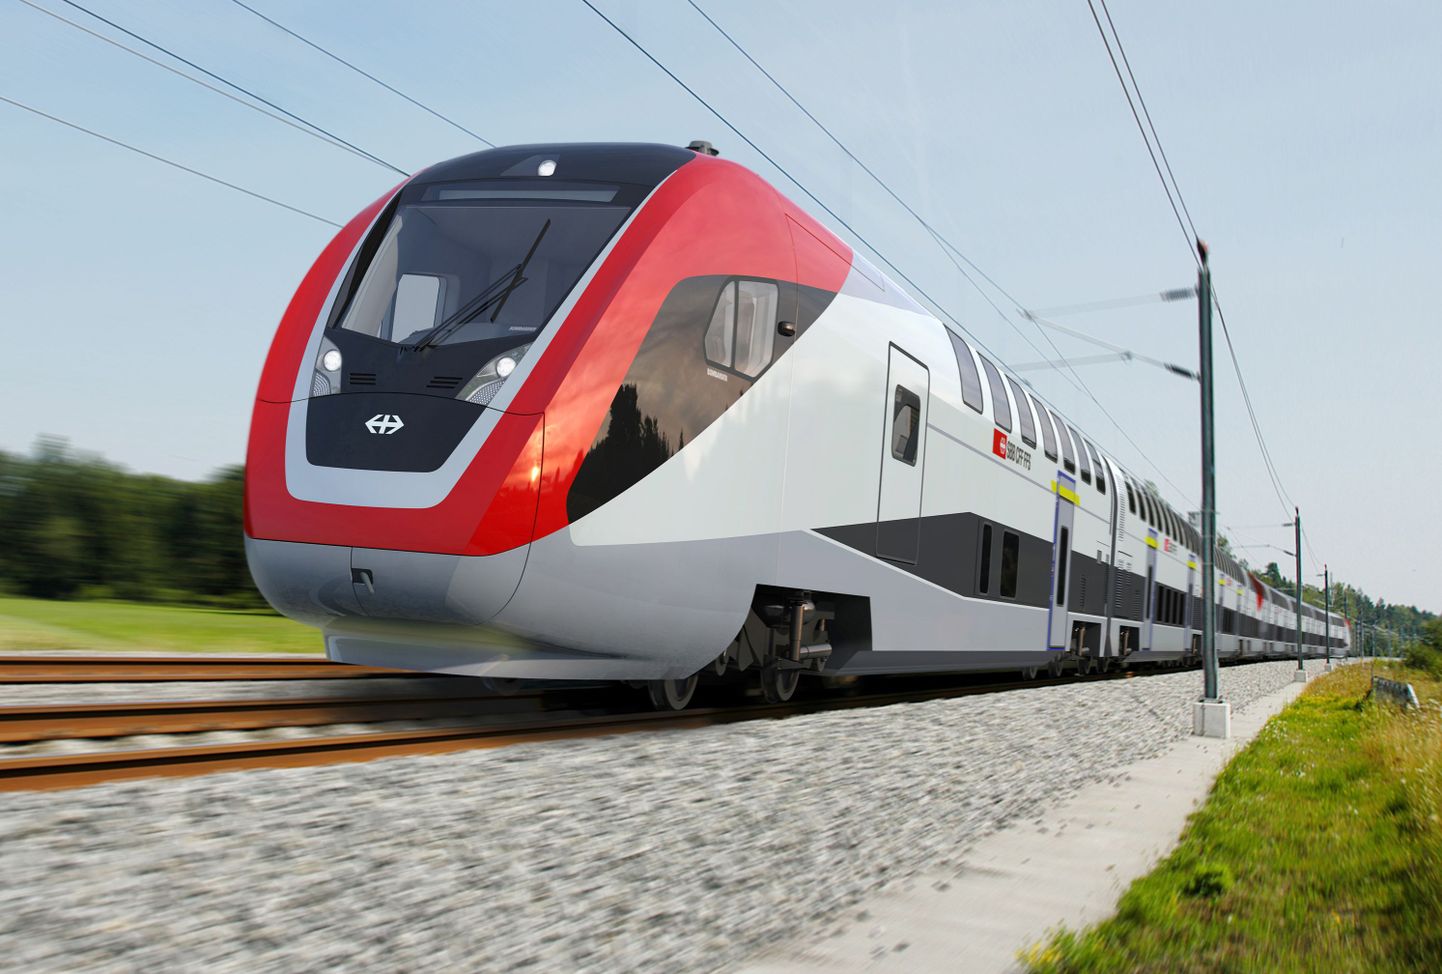 Bombardieri rong, mis peaks hakkama liikuma Šveitsis. Tänavu mais  sõlmis  Bombardier Šveitsi raudteefirmaga 1,9 miljardi frangi mahus lepingu.